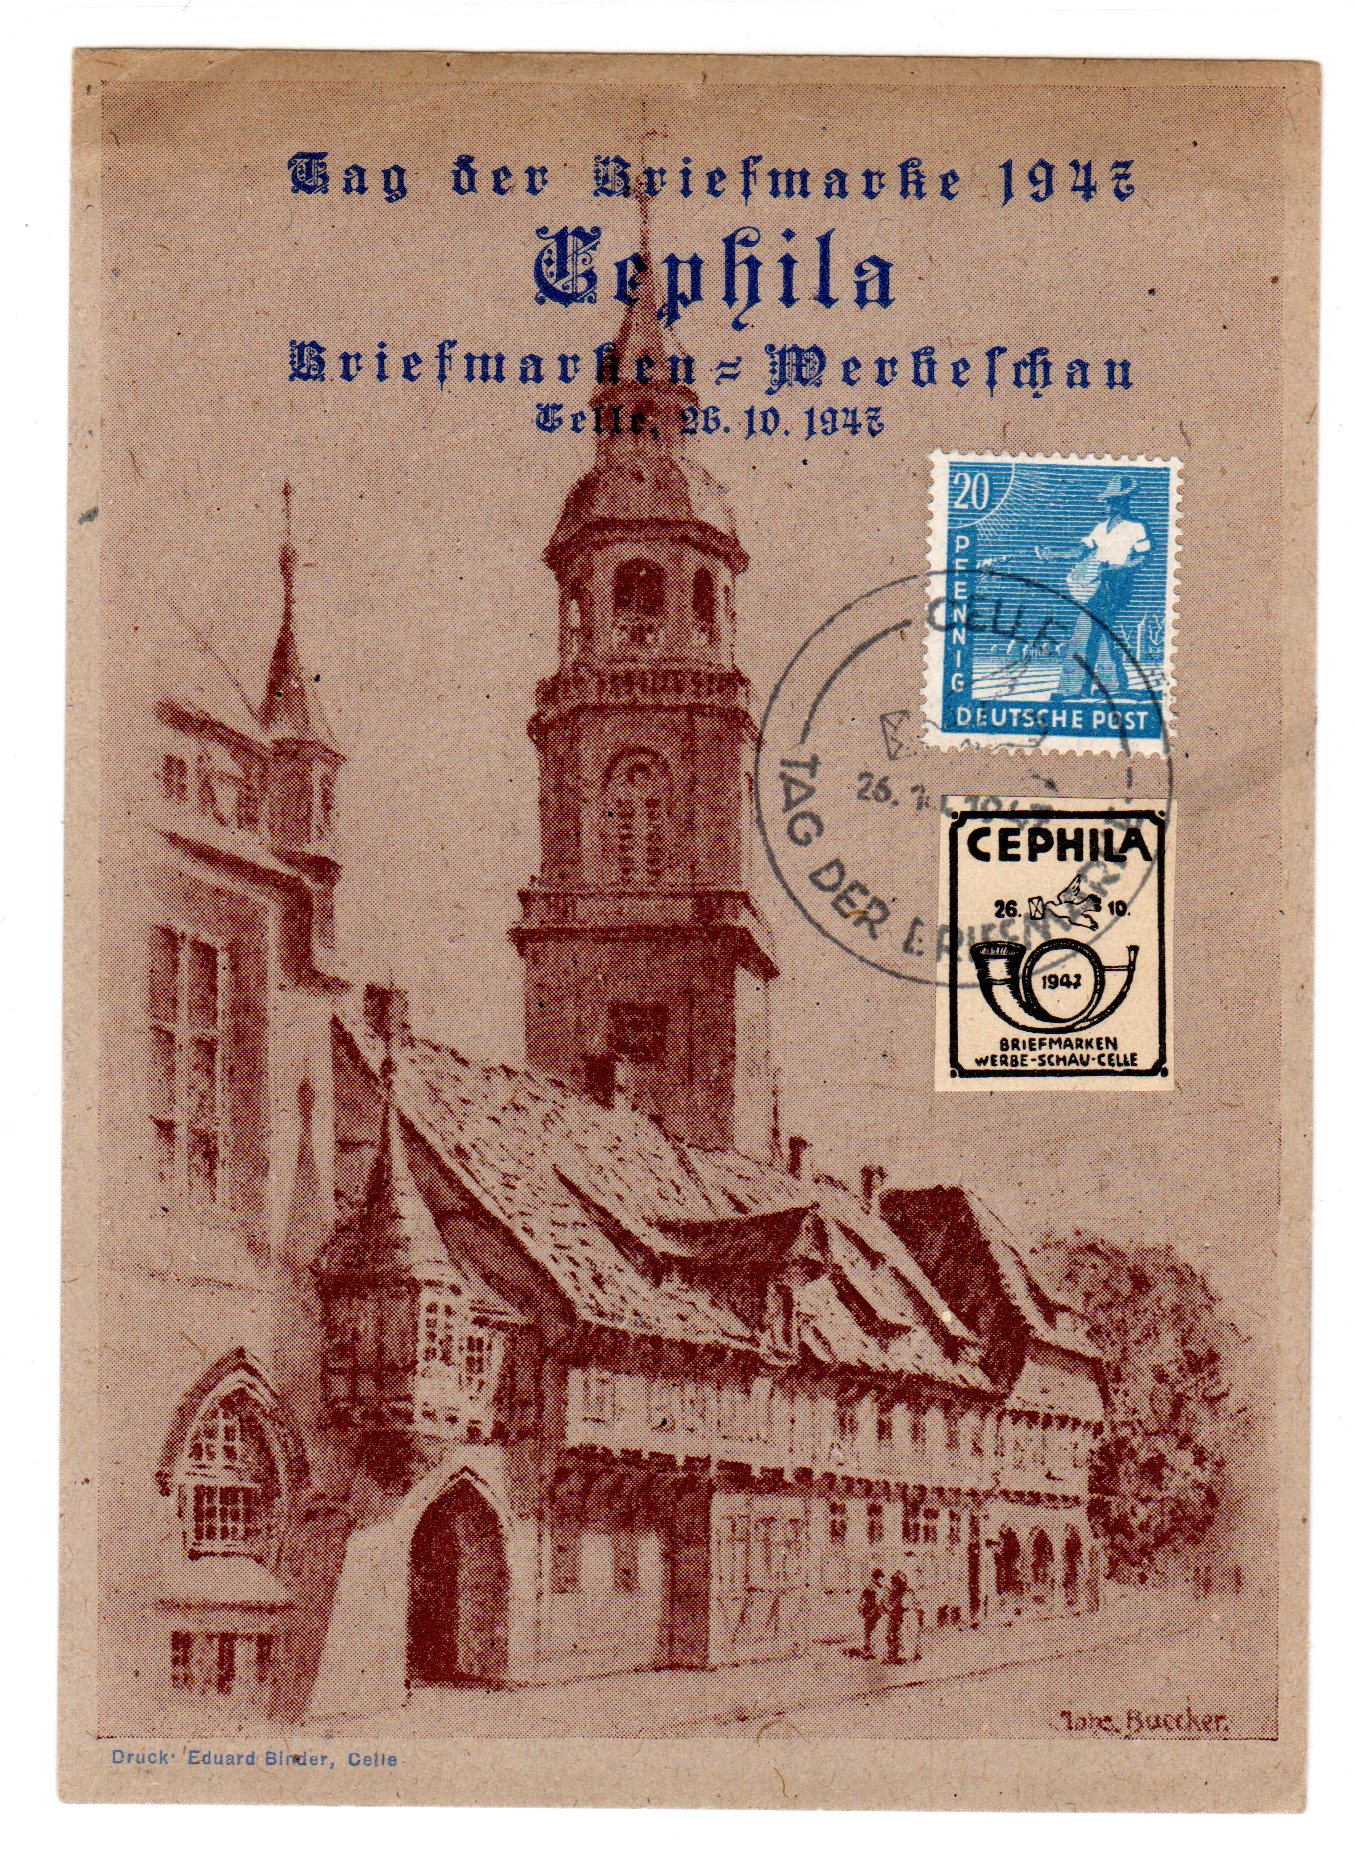 Ereigniskarte Cephila Briefmarken Ausst Celle 1947 Philatelie